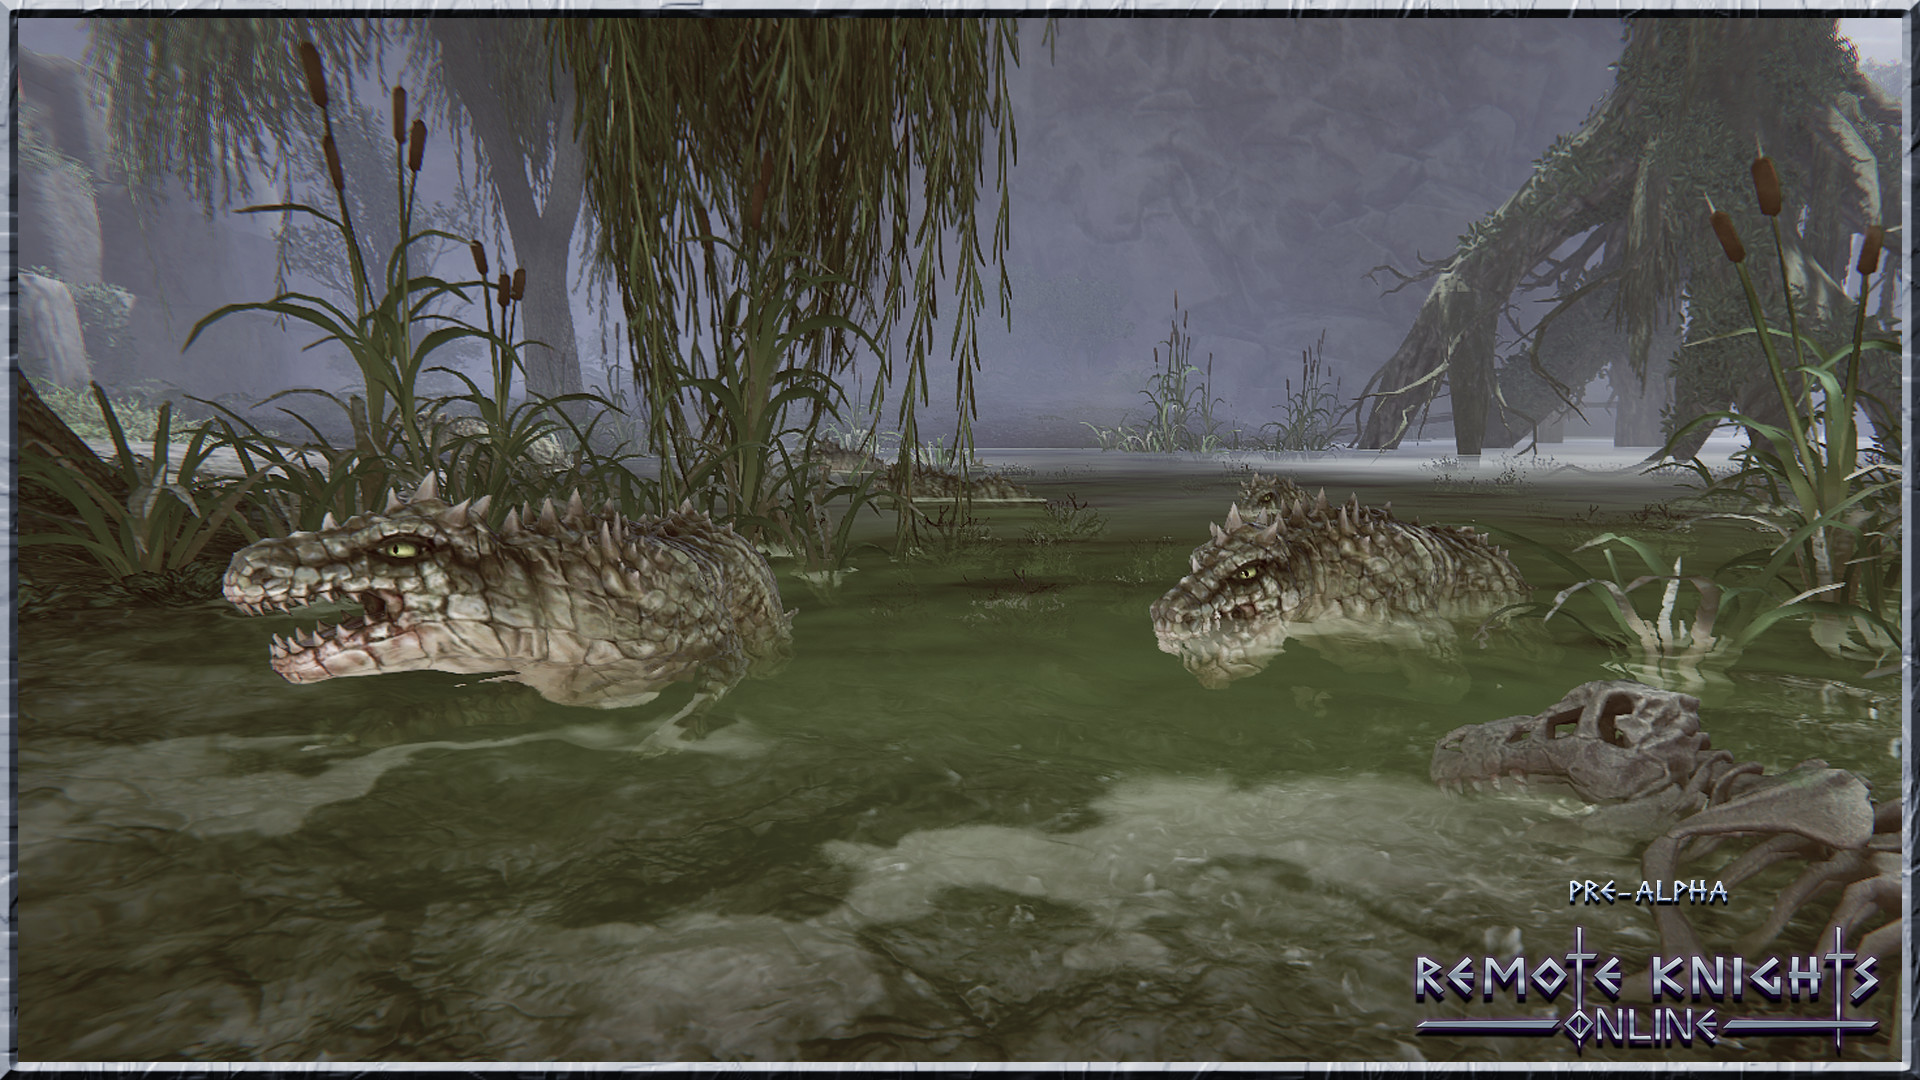 Remote Knights Online screenshot